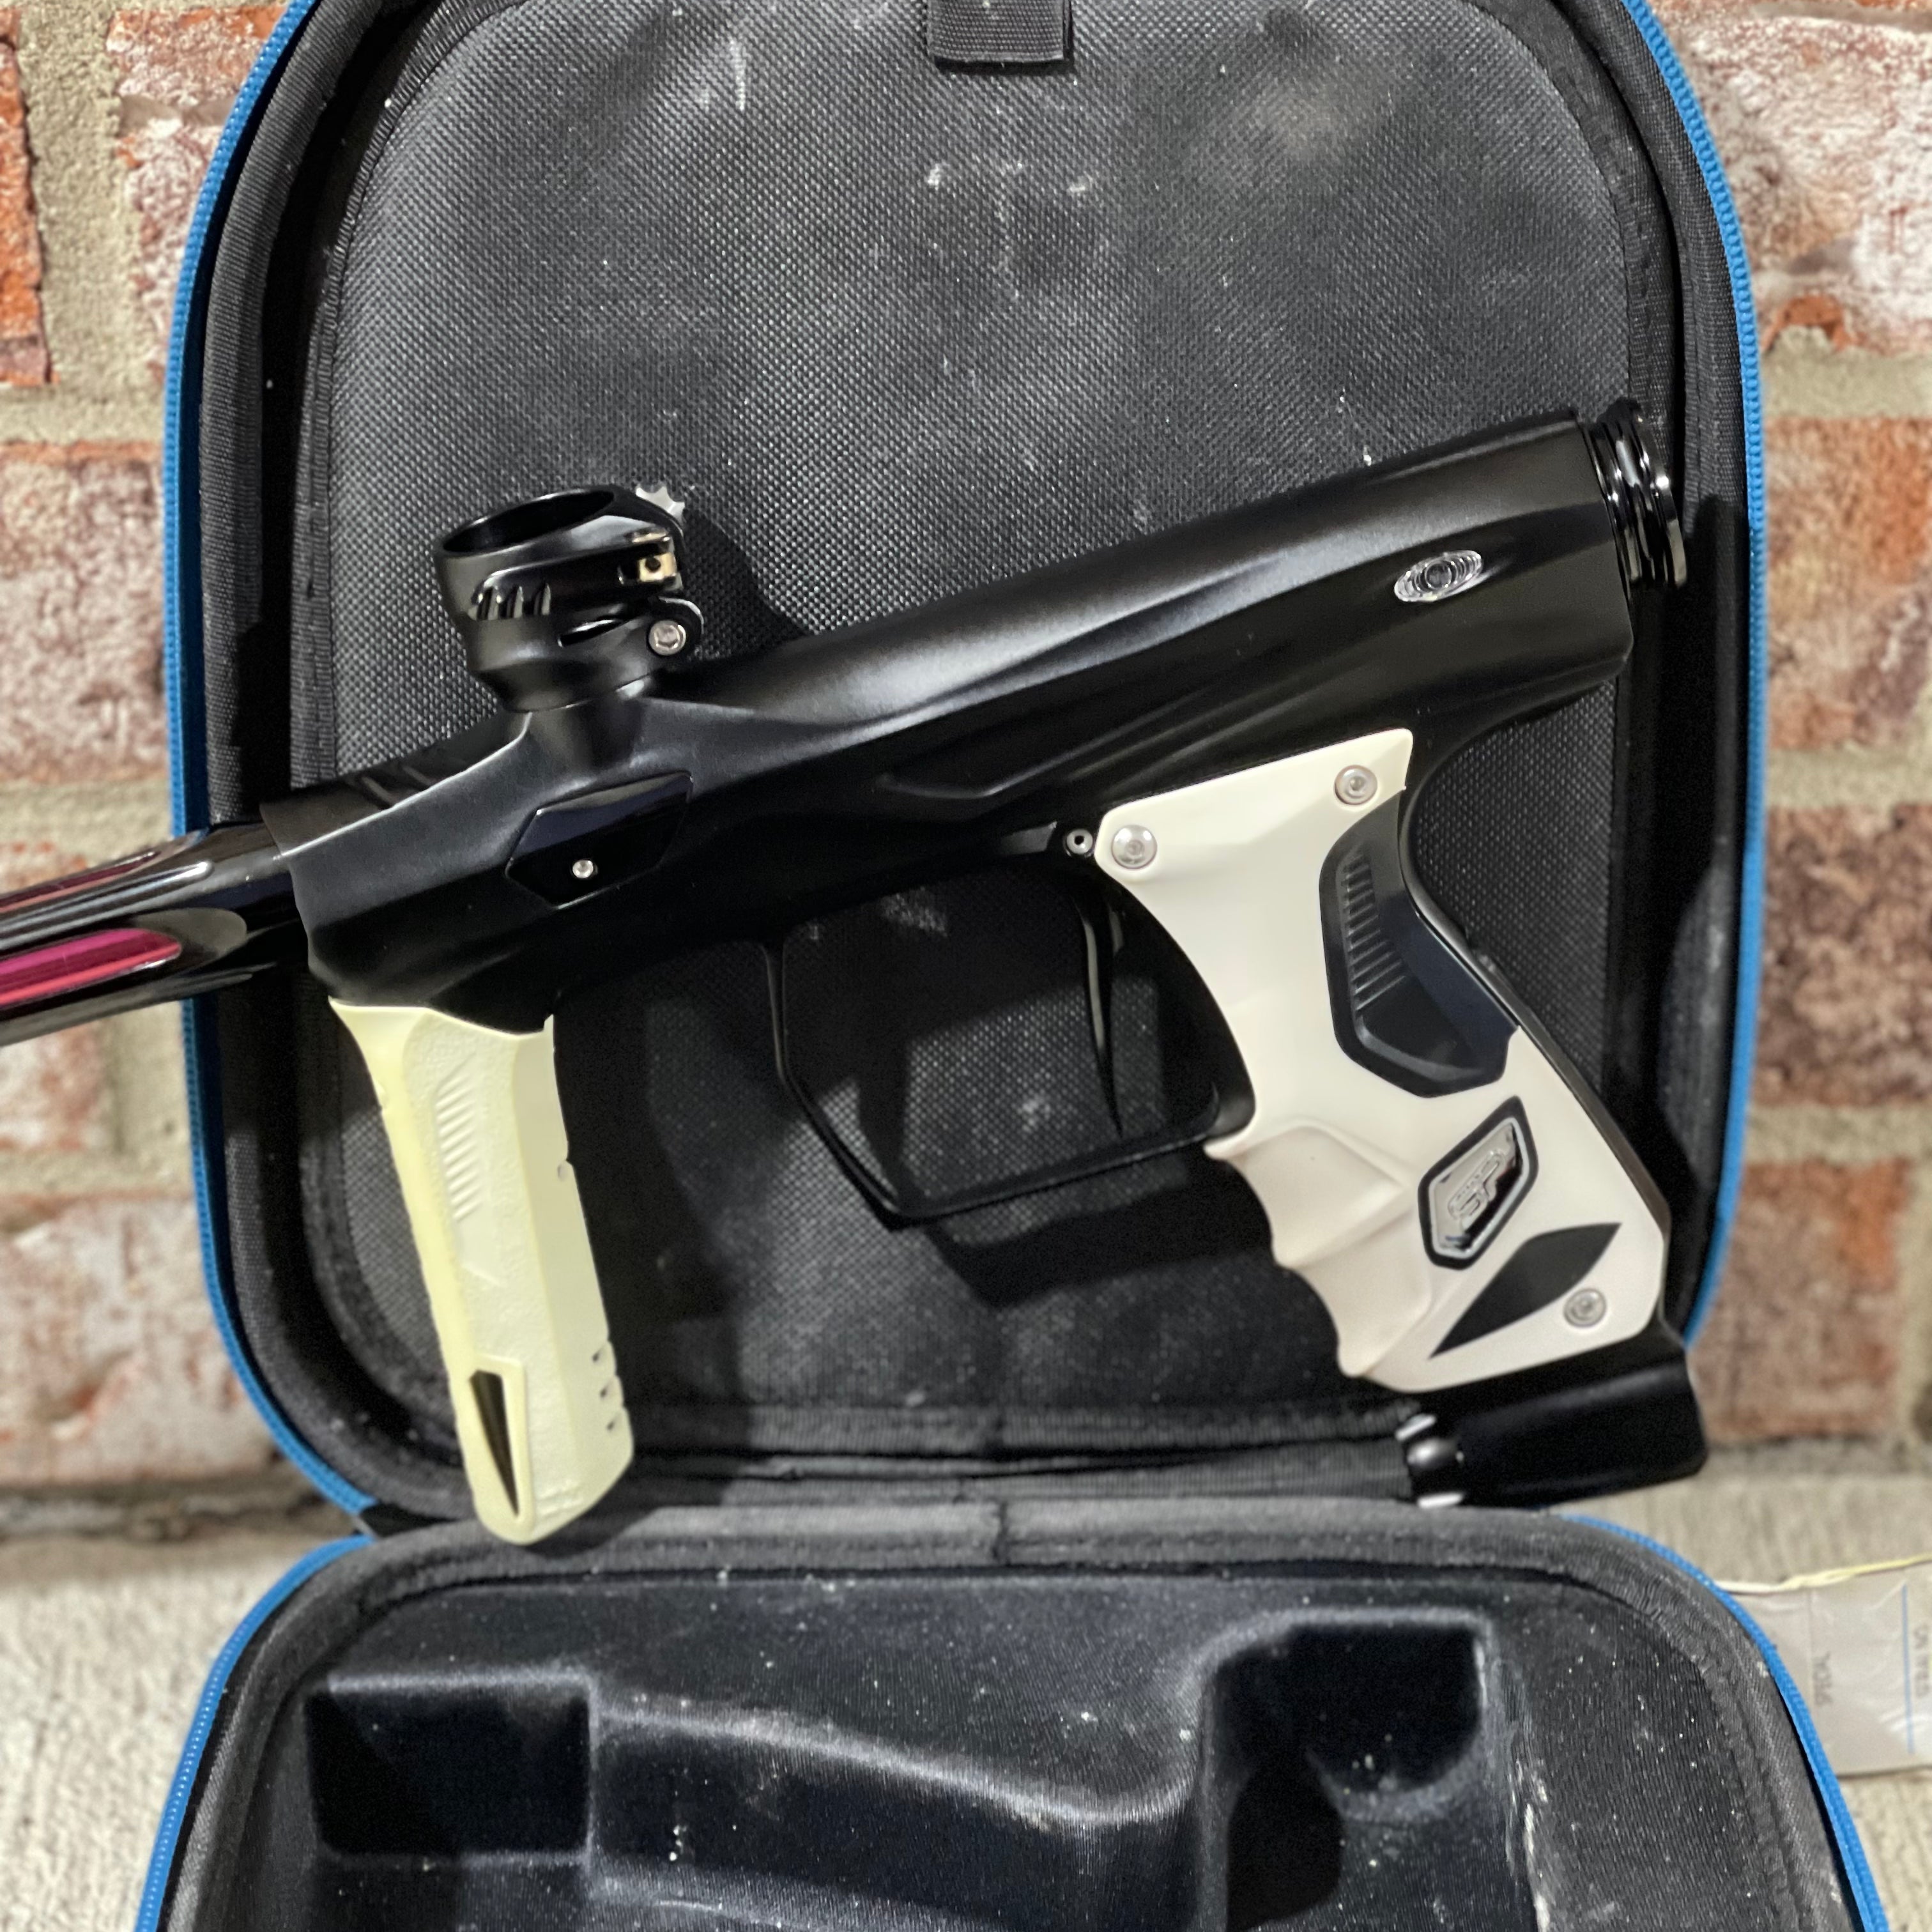 Used Shocker Amp Paintball Gun - Black w/ White Grips